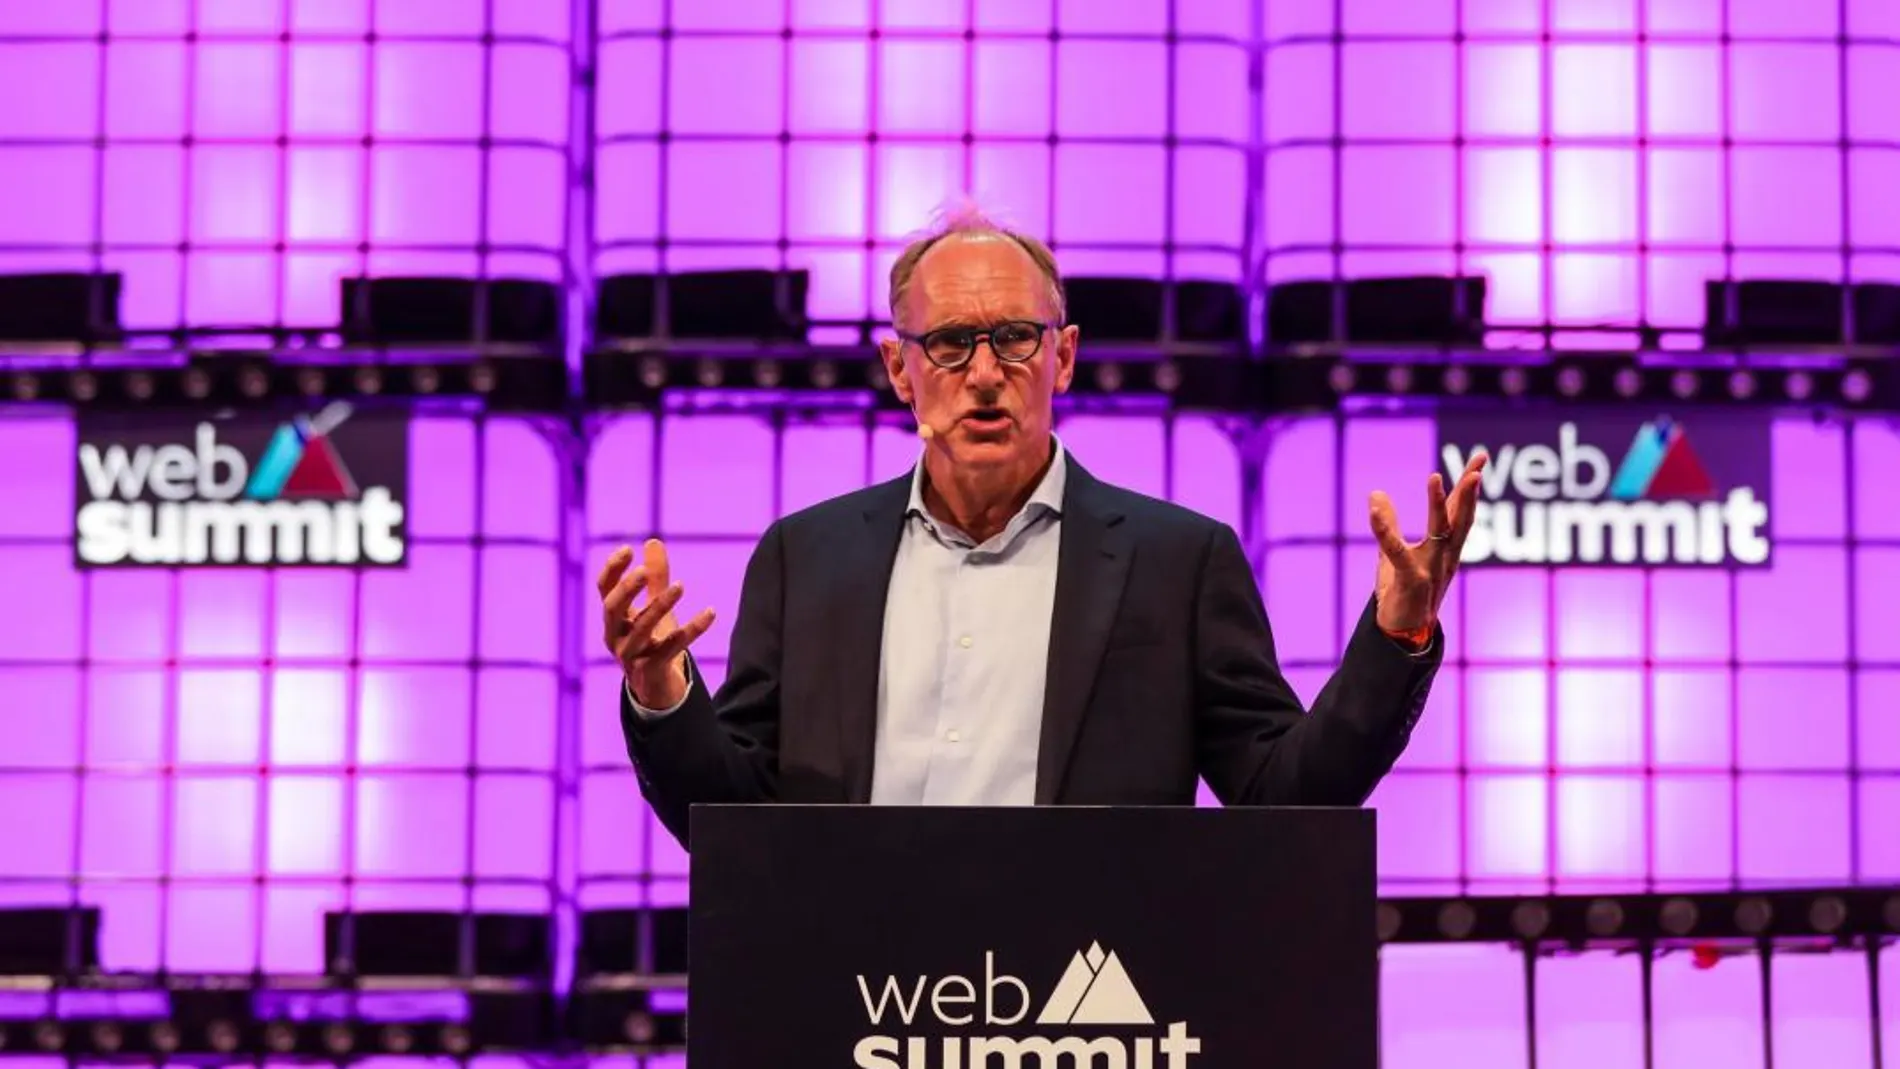 El inventor de la página web, Tim Berners-Lee, pronuncia un discurso durante la inauguración de la Web Summit en el Altice Pavillion, en Lisboa, Portugal / Efe